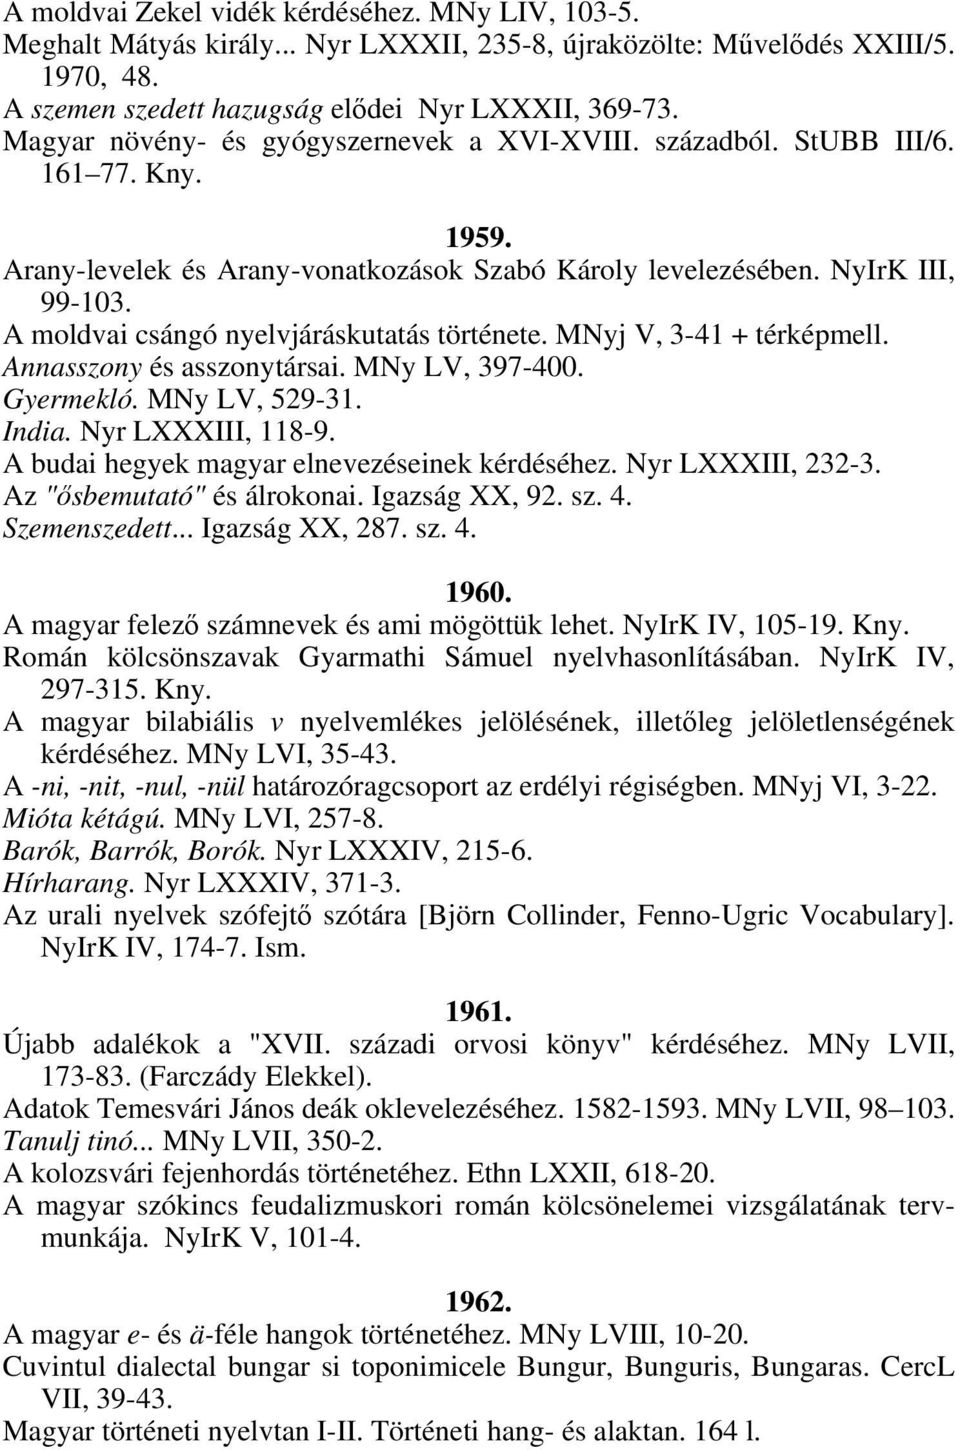 A moldvai csángó nyelvjáráskutatás története. MNyj V, 3-41 + térképmell. Annasszony és asszonytársai. MNy LV, 397-400. Gyermekló. MNy LV, 529-31. India. Nyr LXXXIII, 118-9.